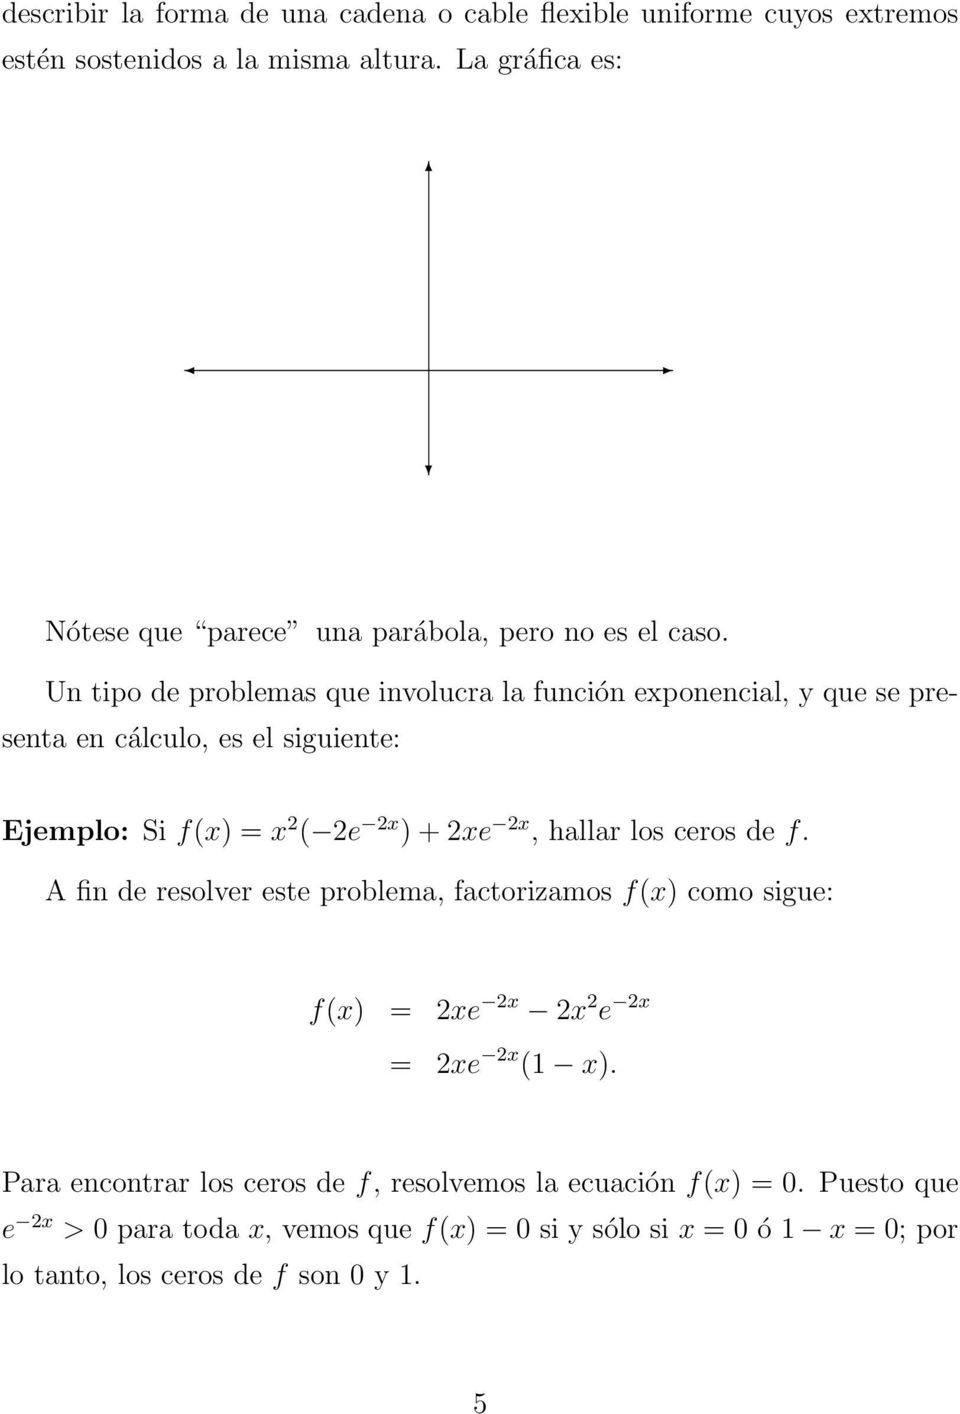 Un tipo de problemas que involucra la función exponencial, y que se presenta en cálculo, es el siguiente: Ejemplo: Si f(x) = x ( e x ) + xe x, hallar los